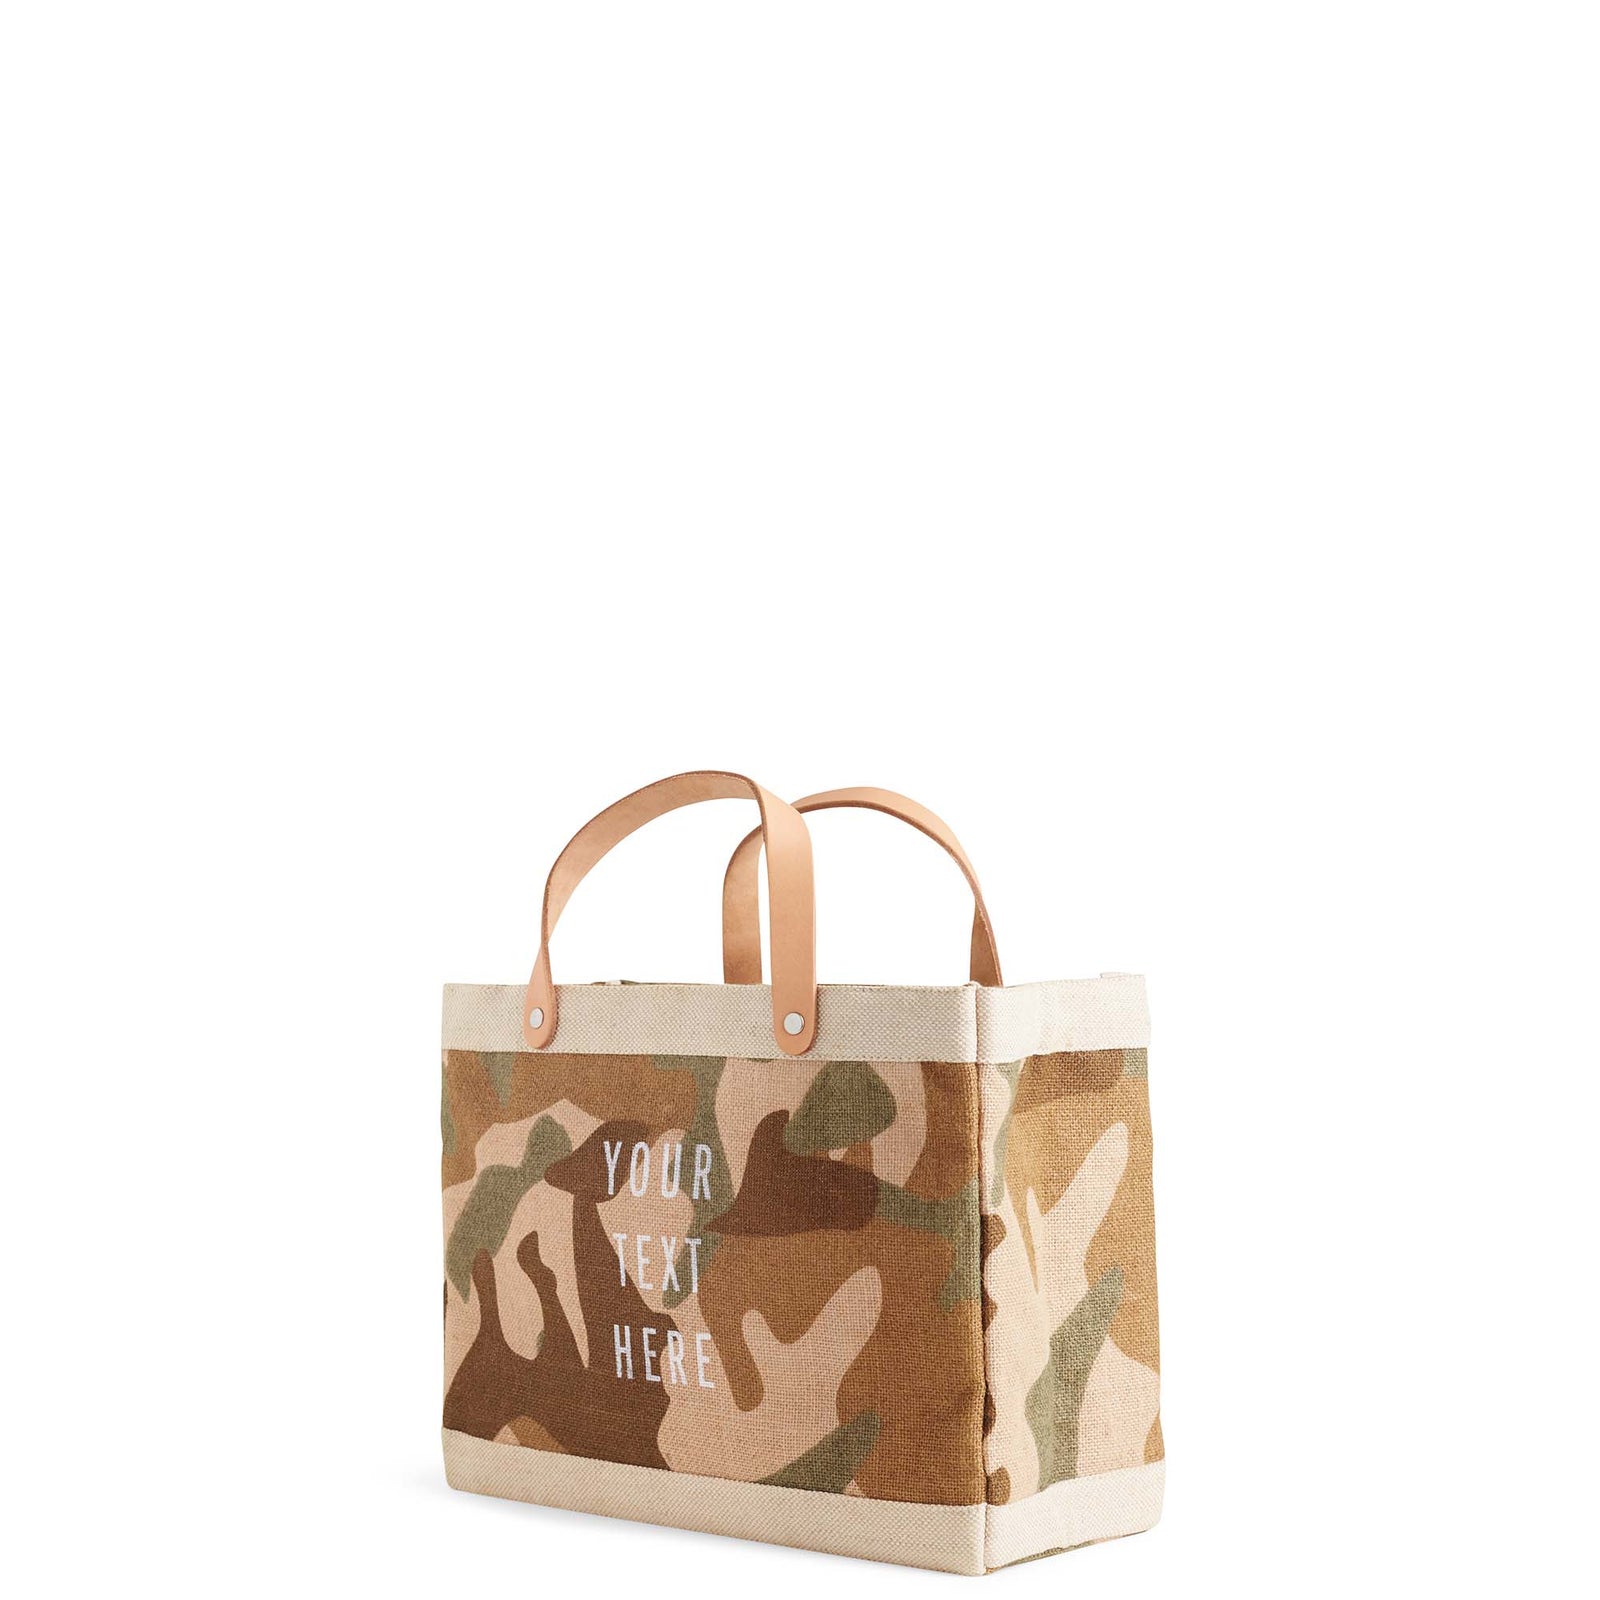 Petite Market Bag in Safari - Wholesale